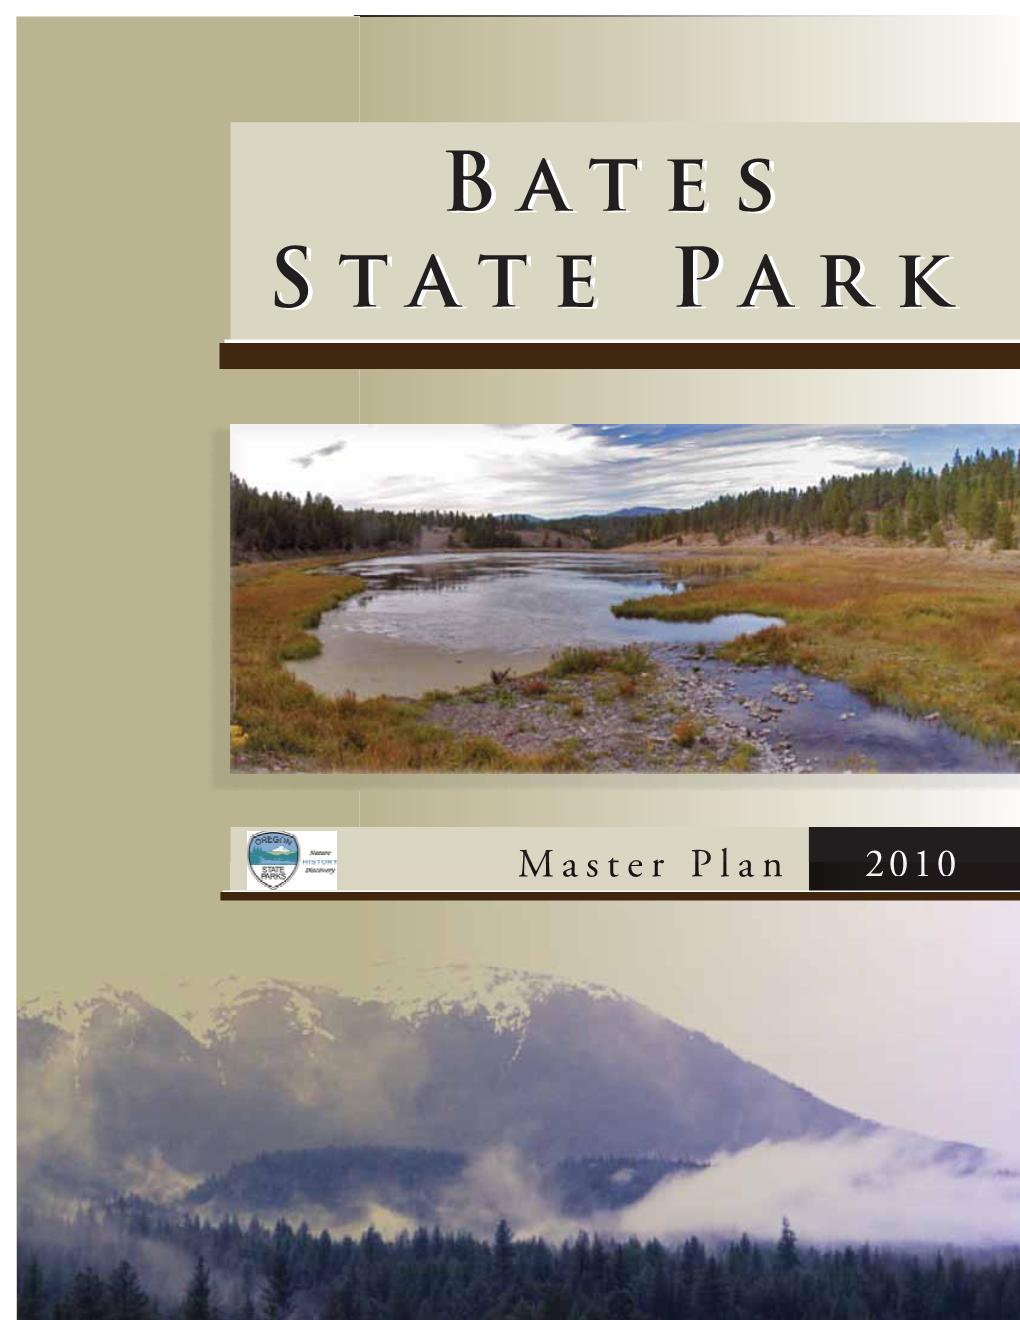 Bates State Park Master Plan 2010